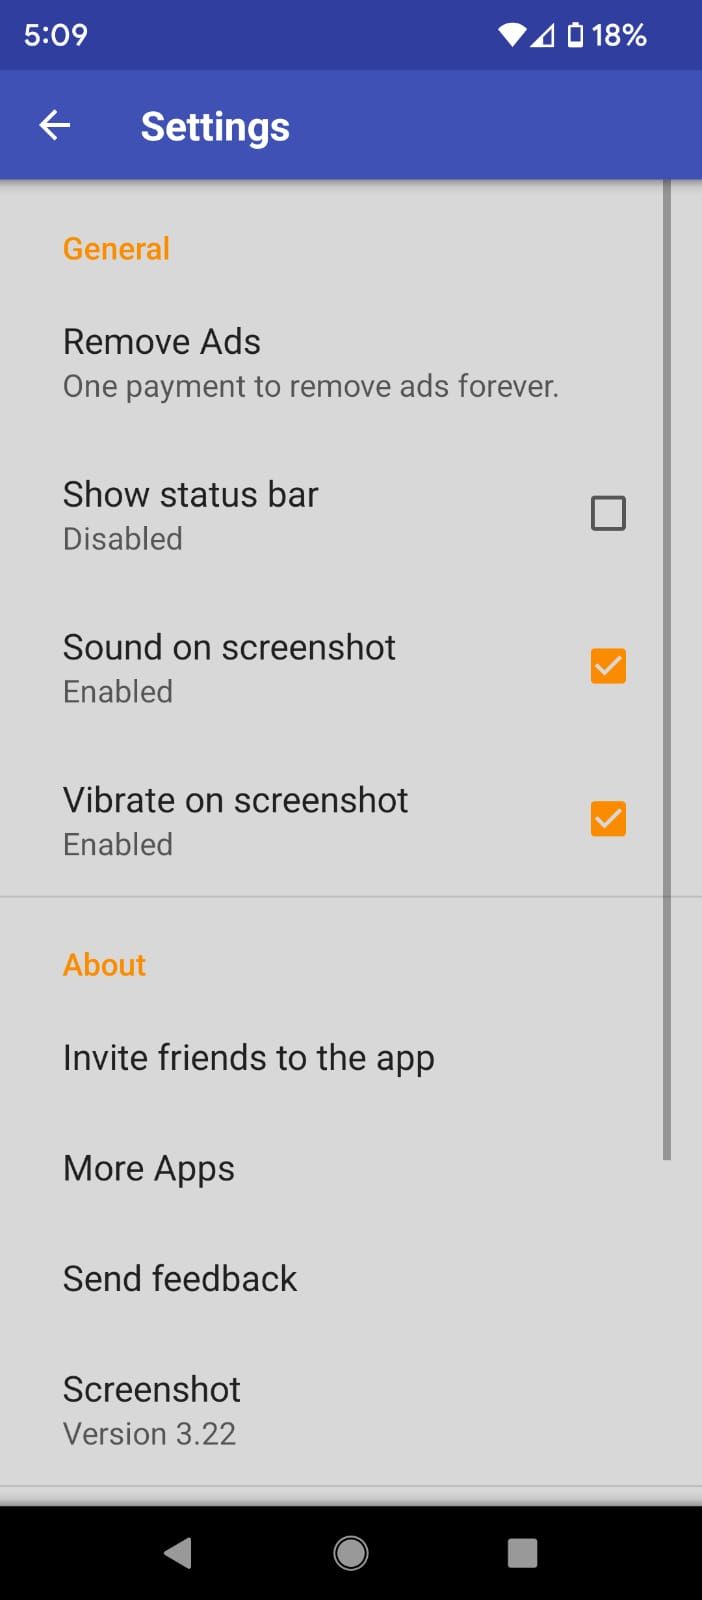 Settings menu in Screenshot